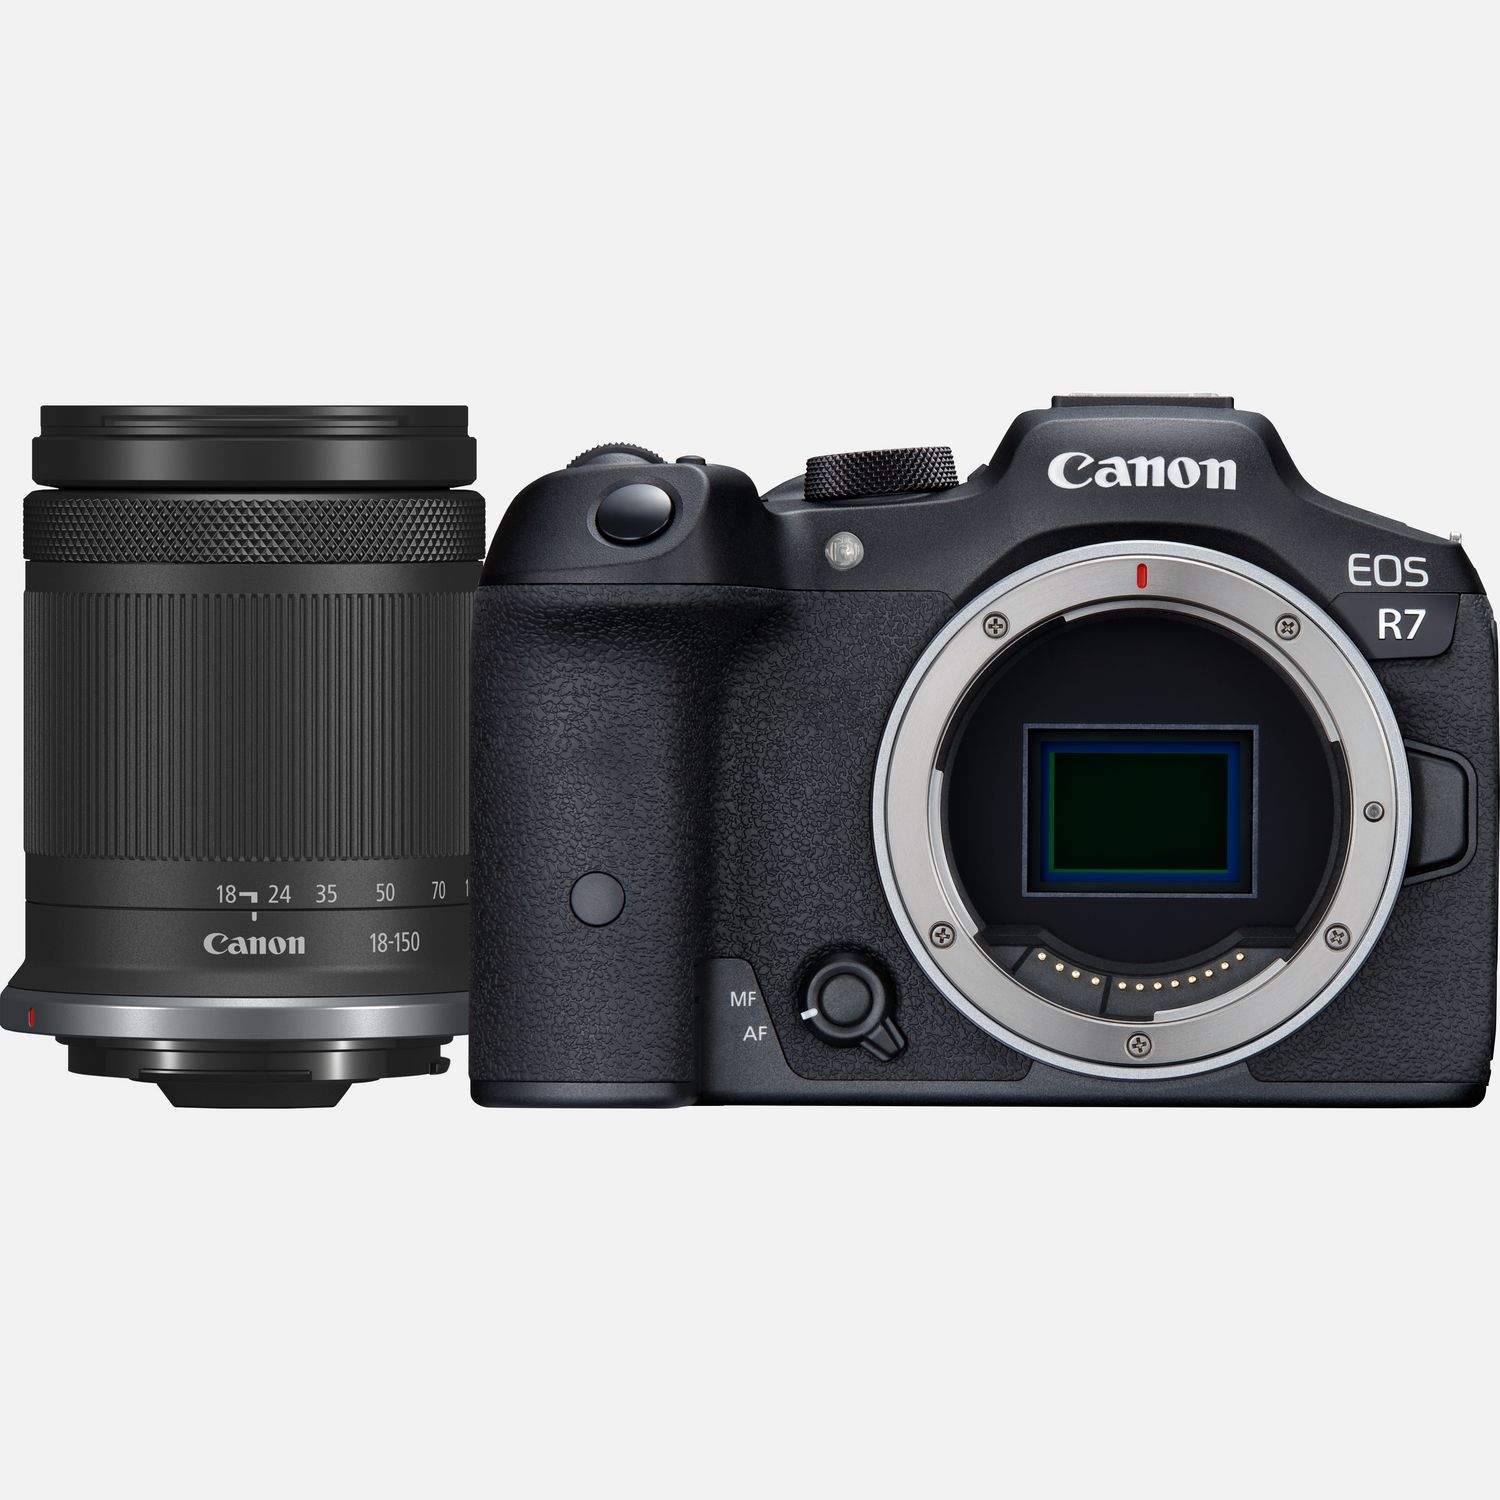 Buy Canon EOS WLAN-Kameras Objektiv F3.5-6.3 IS Schweiz Canon 18-150mm + in Systemkamera Shop RF-S STM R7 —